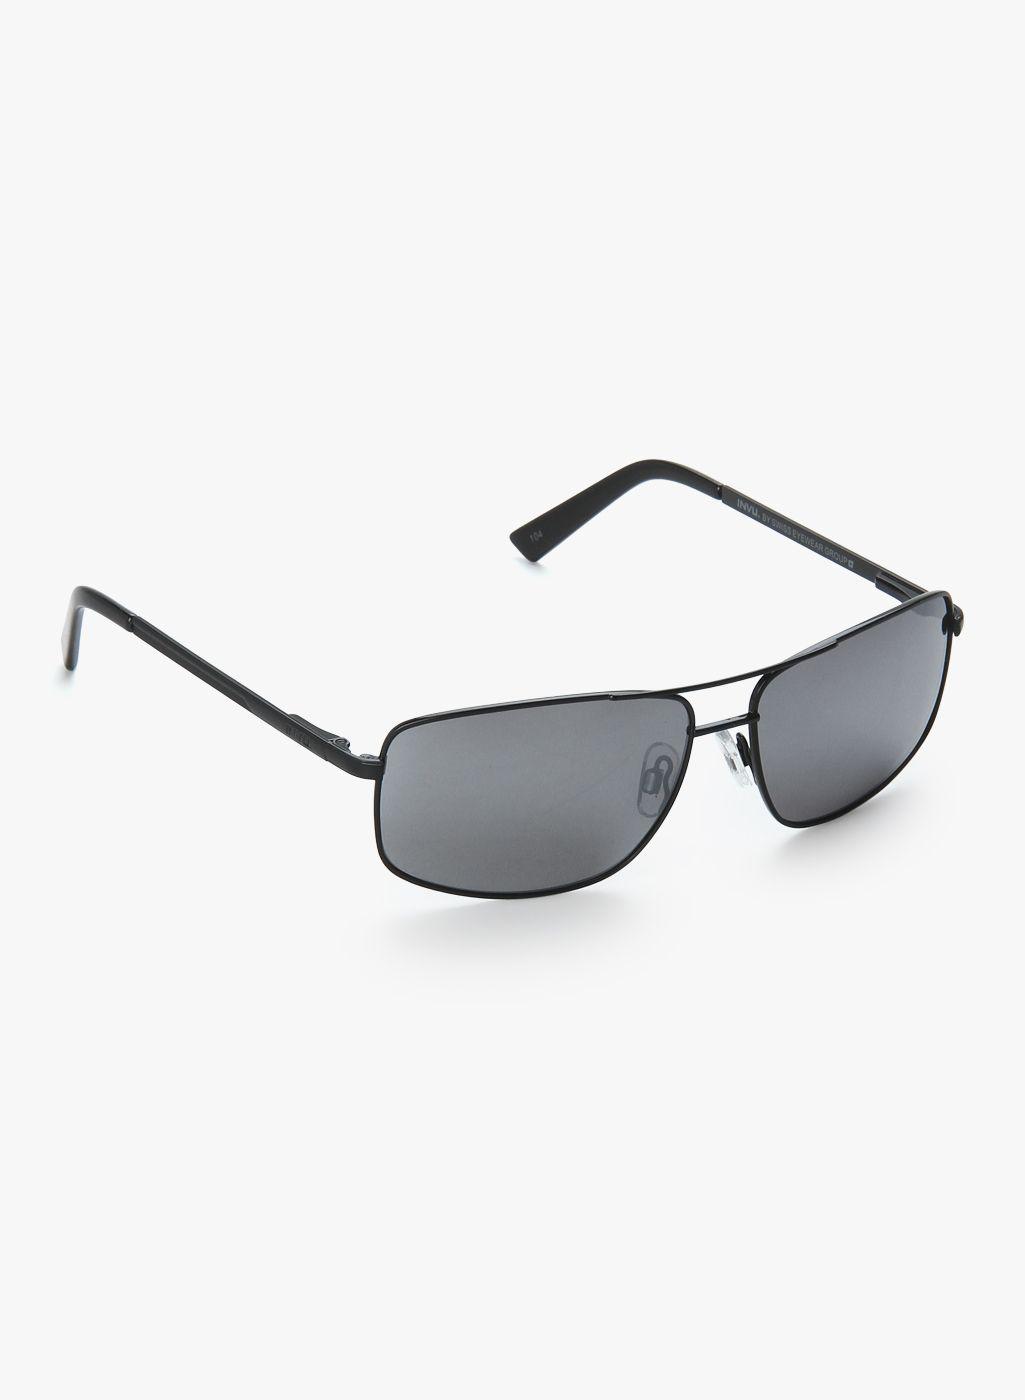 invu men rectangle sunglasses